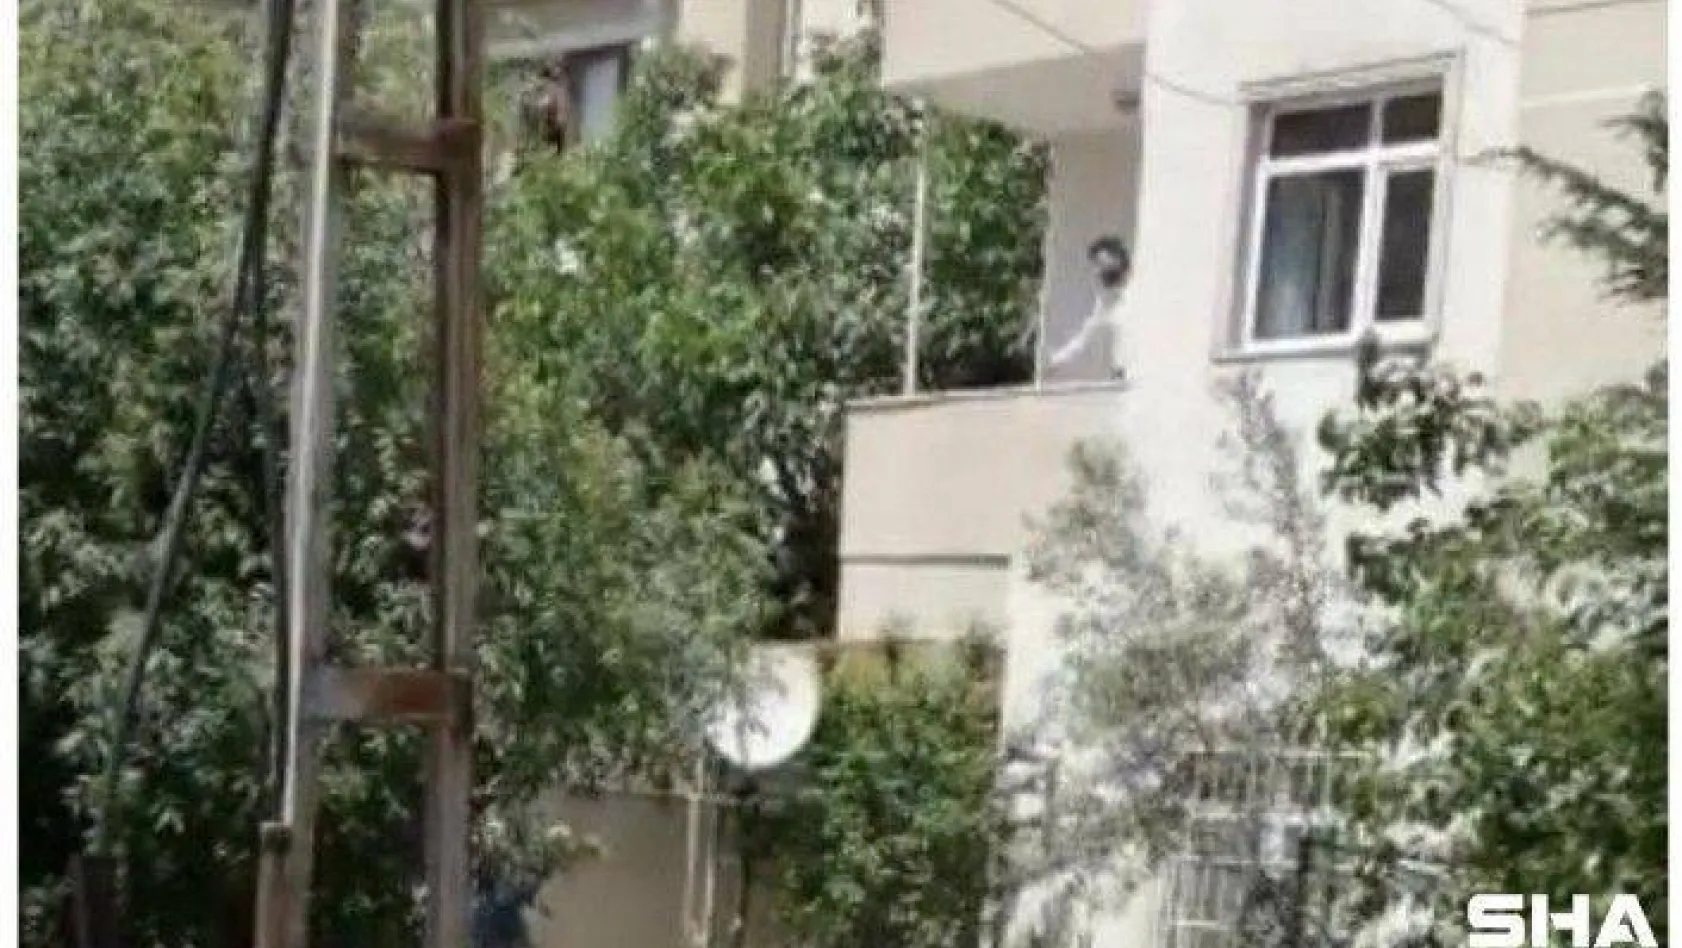 Maltepe'de evinin balkonunda bileklerini kesen şahıs eşini ve çocuklarını rehin aldı